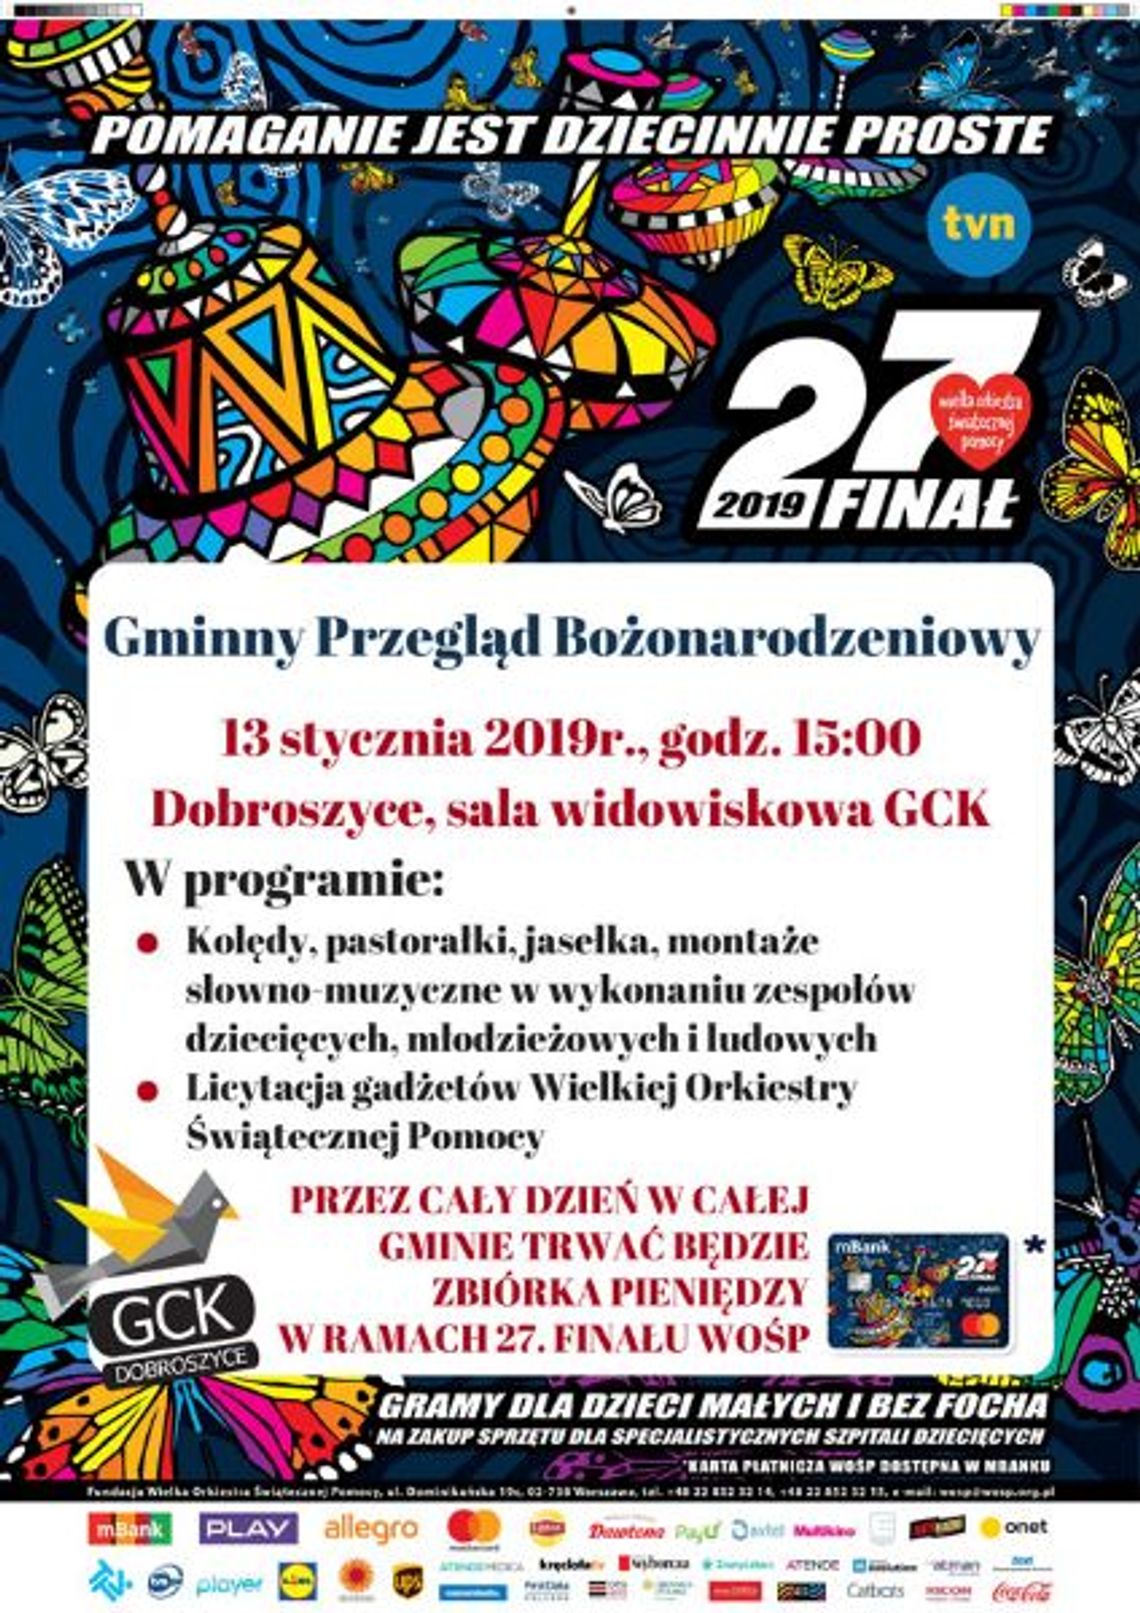 Gminny Przegląd Bożonarodzeniowy  - 27 Finał Wielkiej Orkiestry Świątecznej Pomocy w Dobroszycach